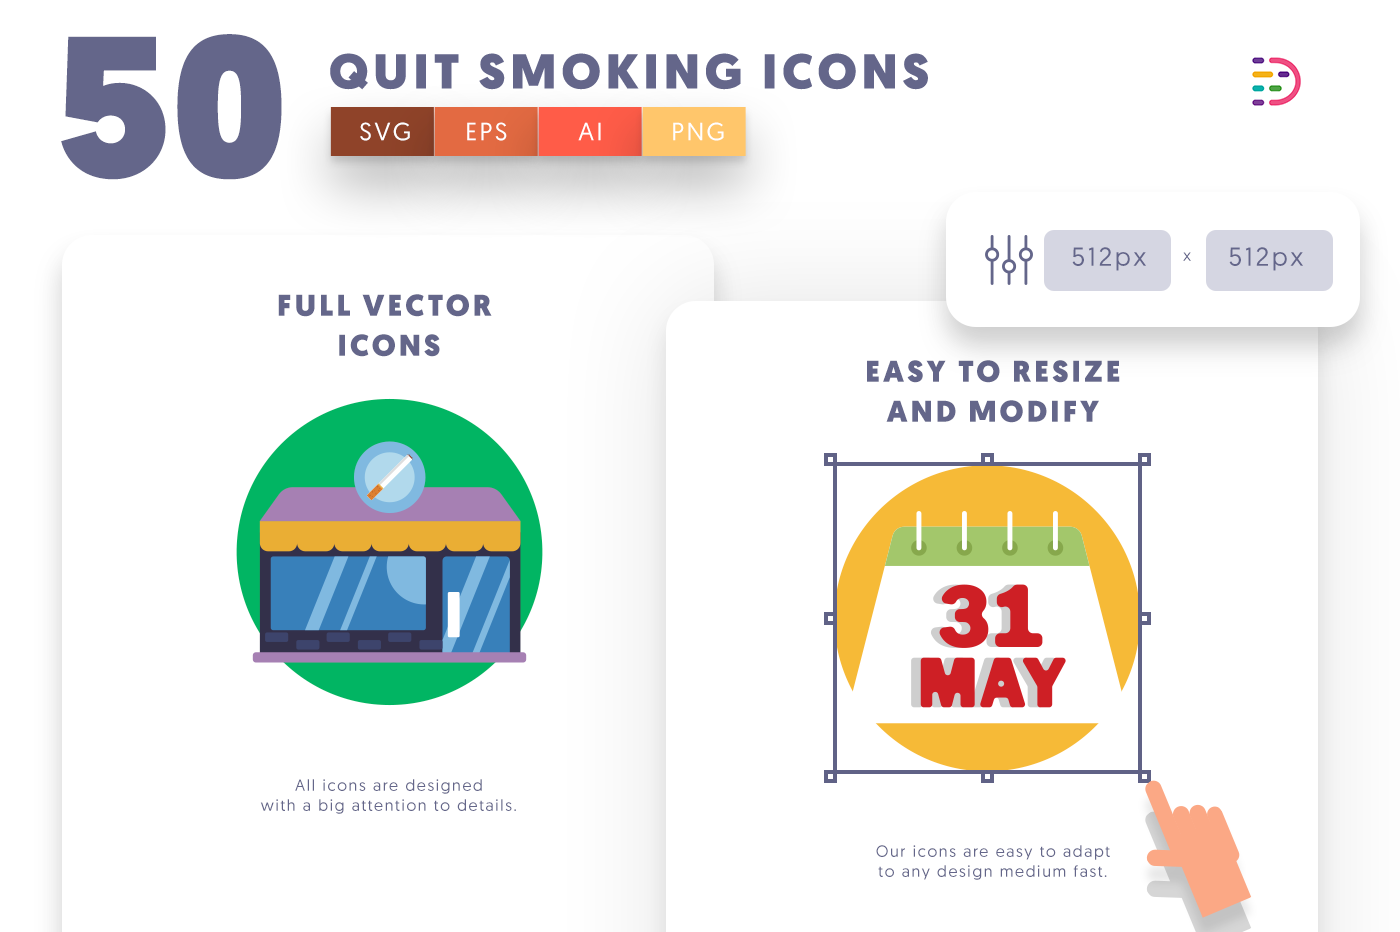 50-Quit Smoking-Icons